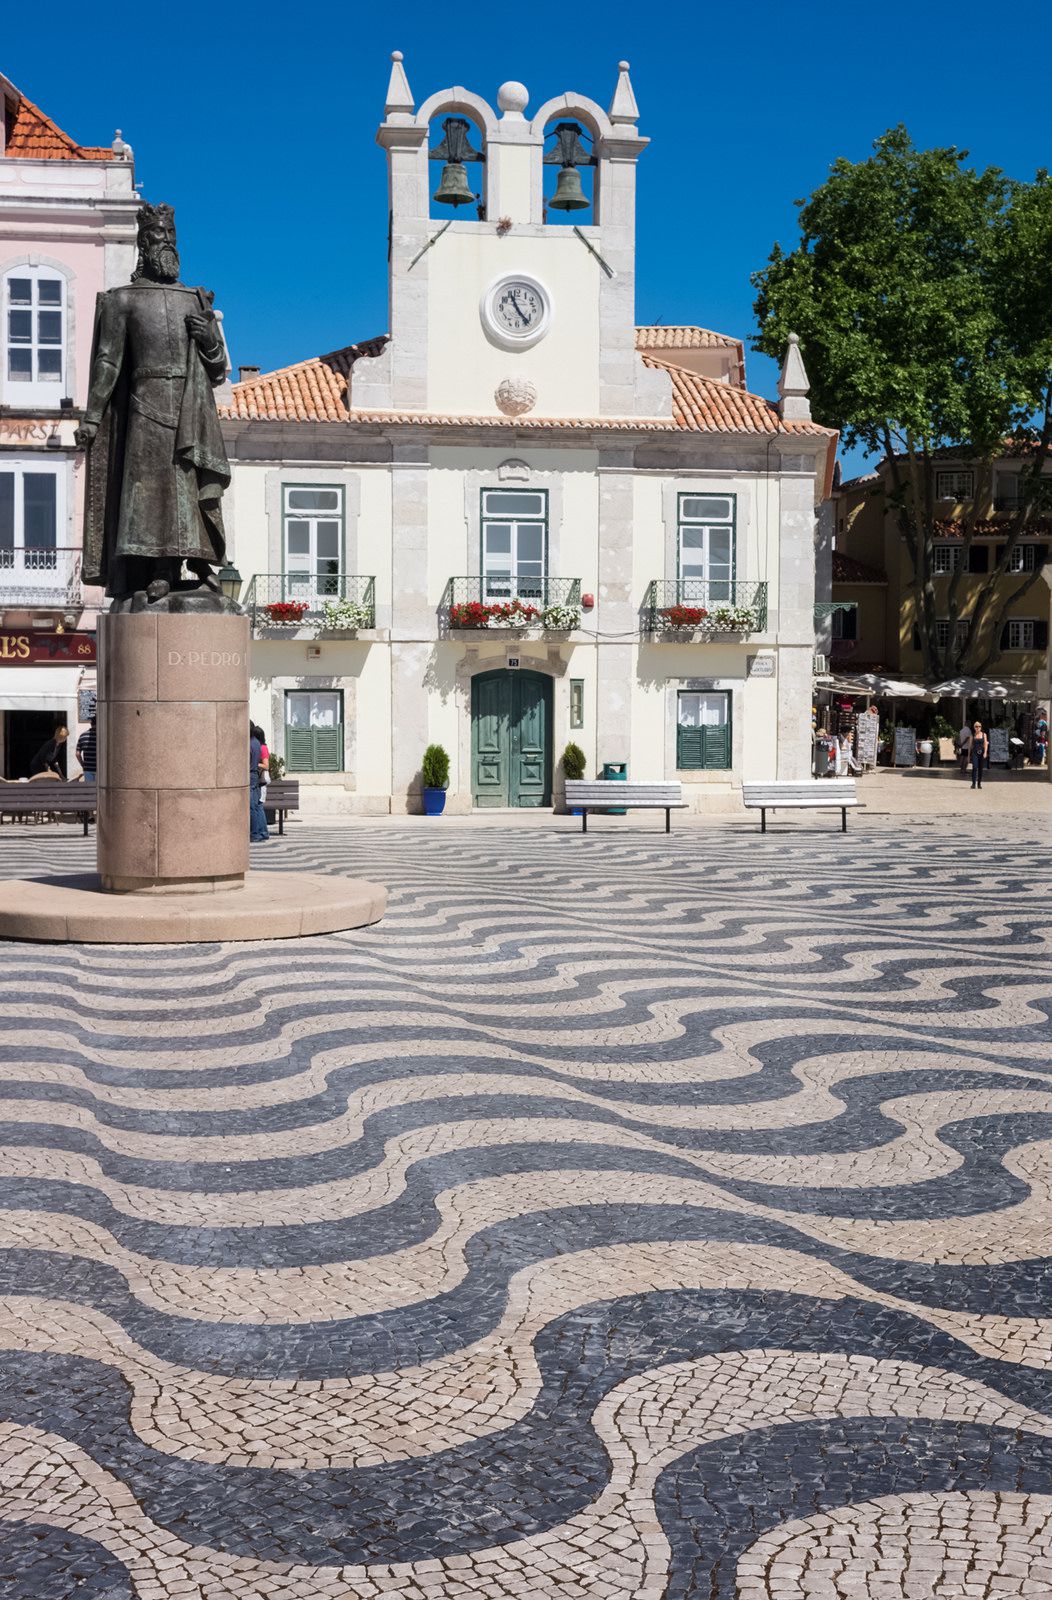 Ратуша и памятник королю Португалии Педру I в Кашкайше - Кашкайш, Португалия фото #32786